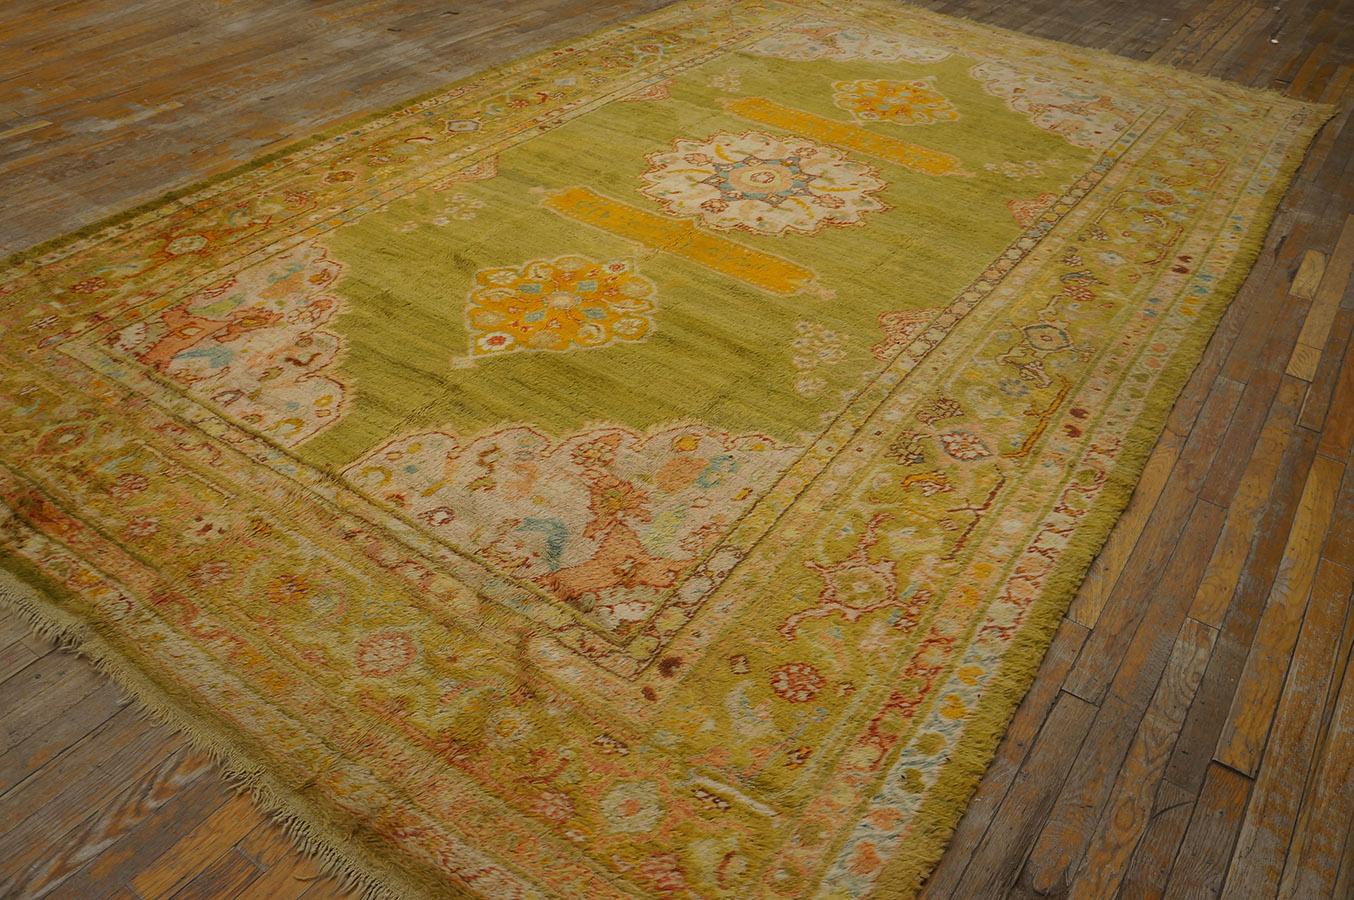 Antique Turkish Oushak rug, size: 7' 8'' x 13' 0''.